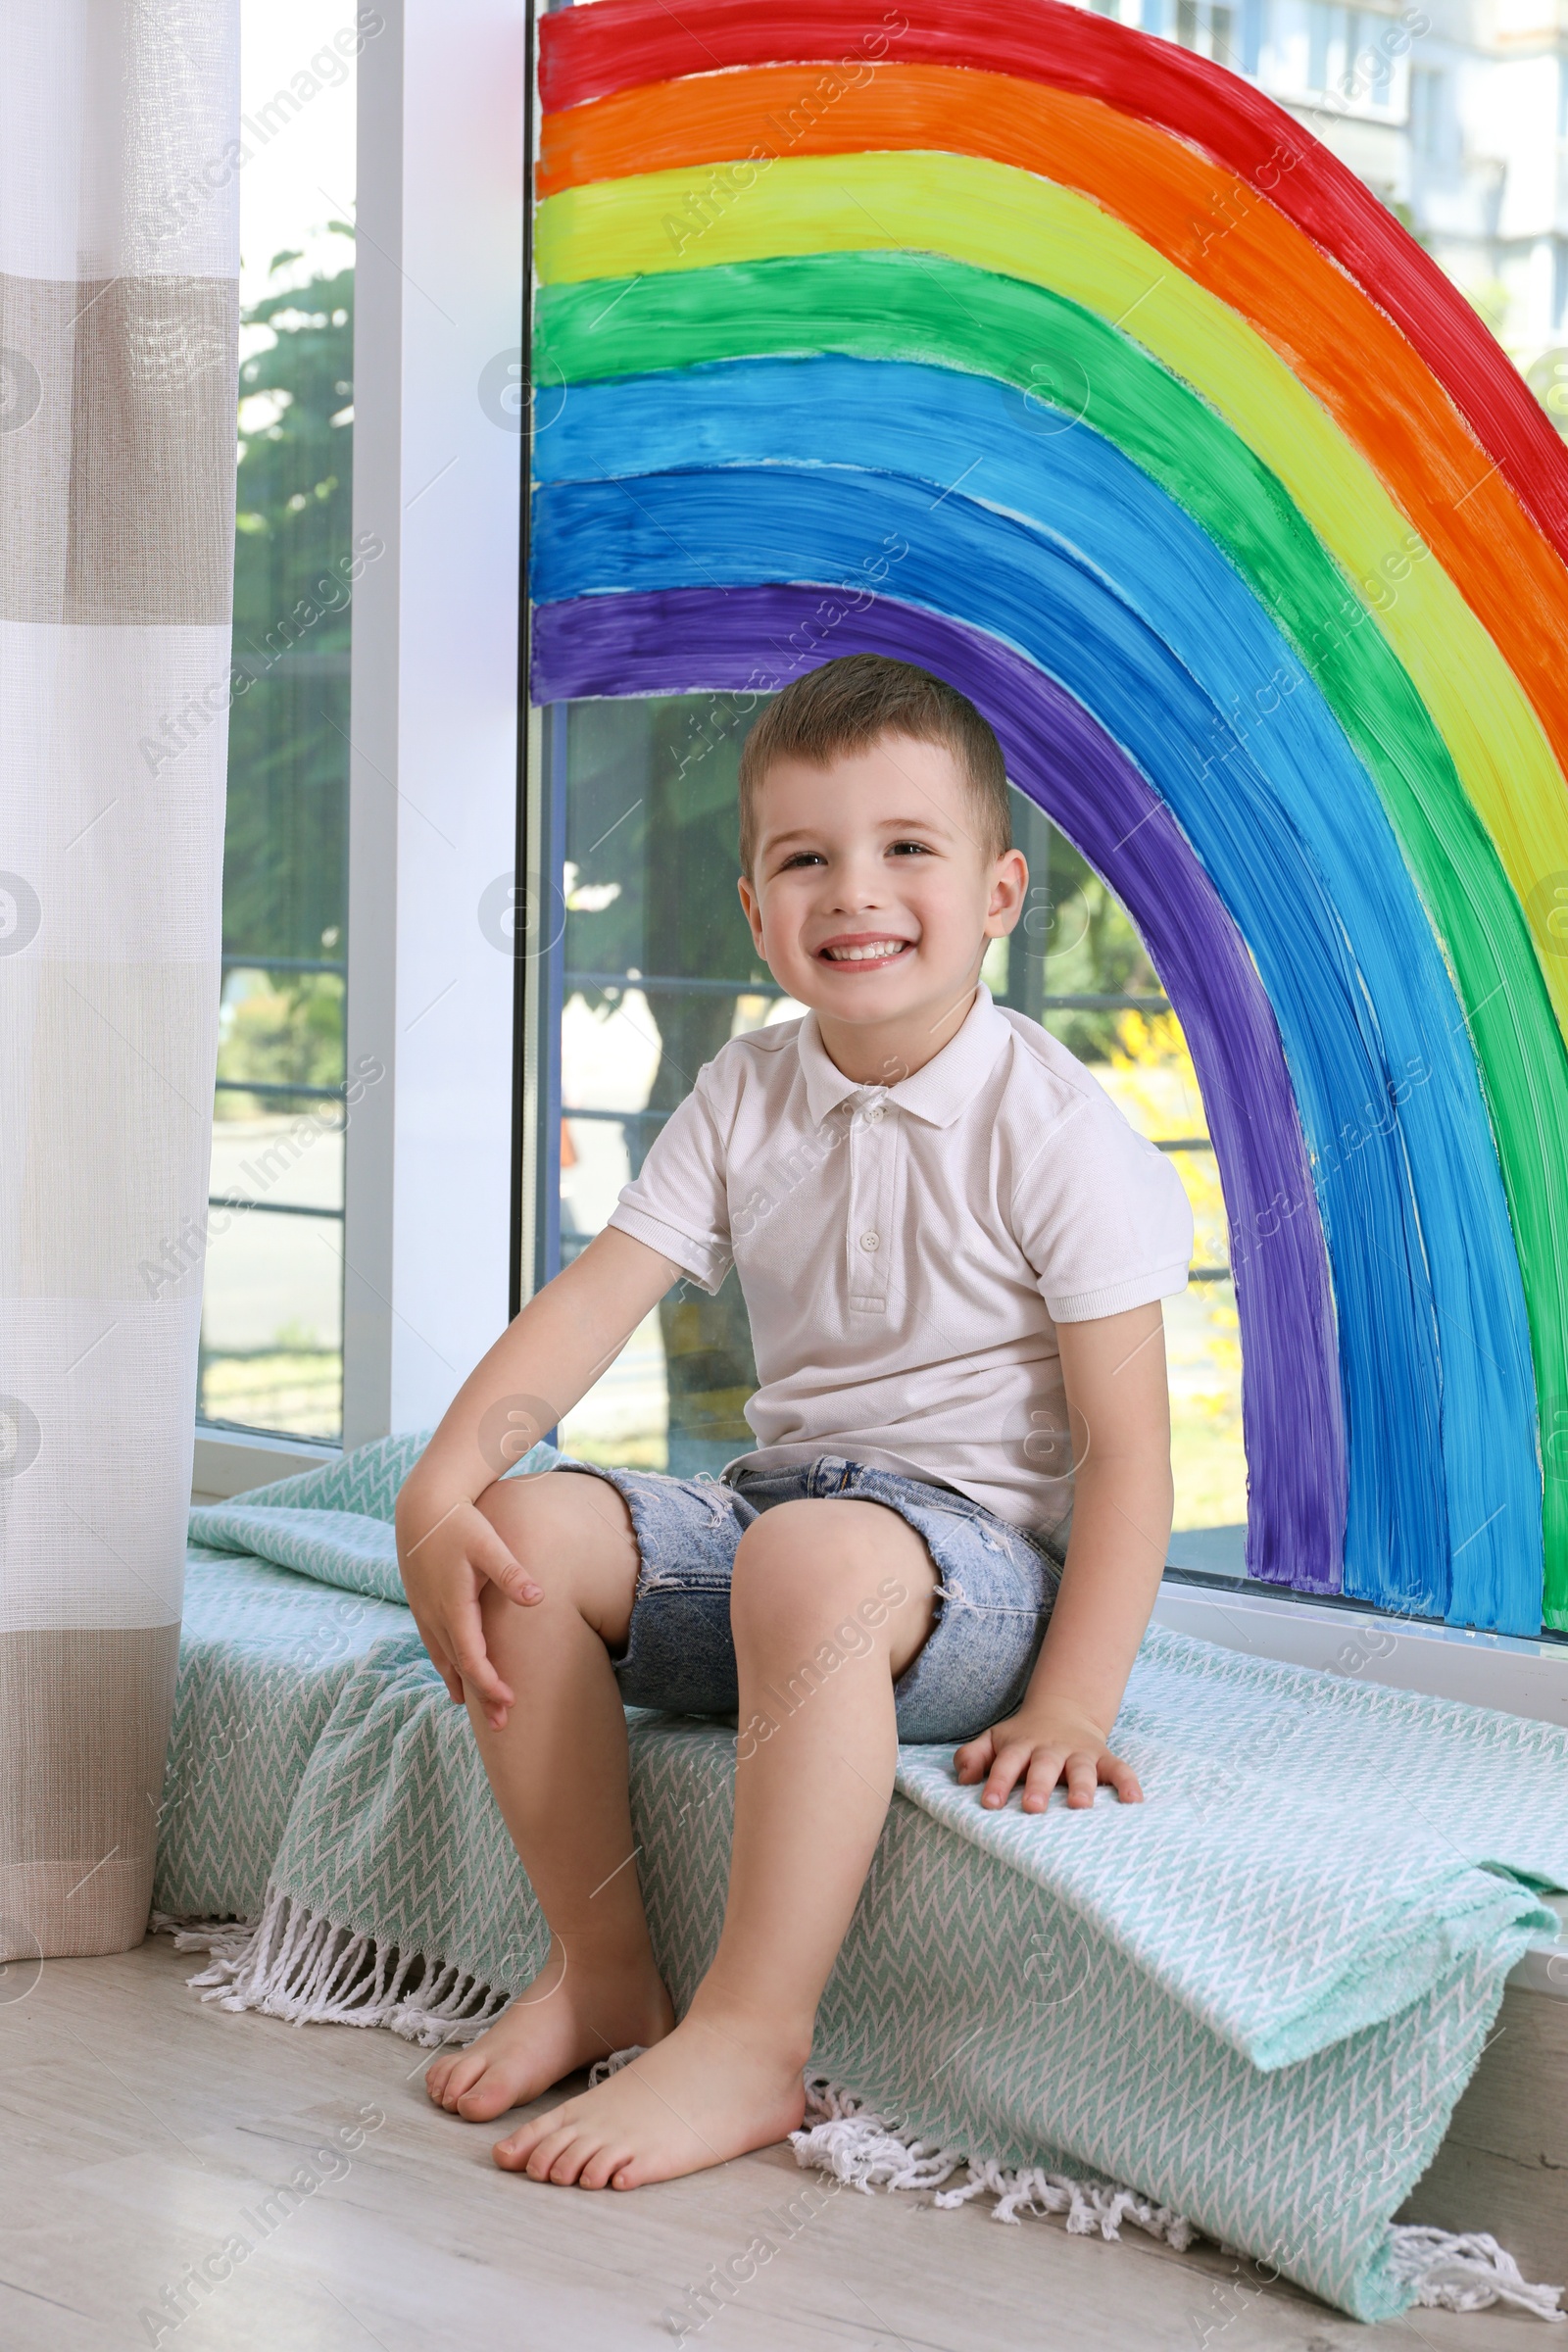 Photo of Little boy near rainbow painting on window indoors